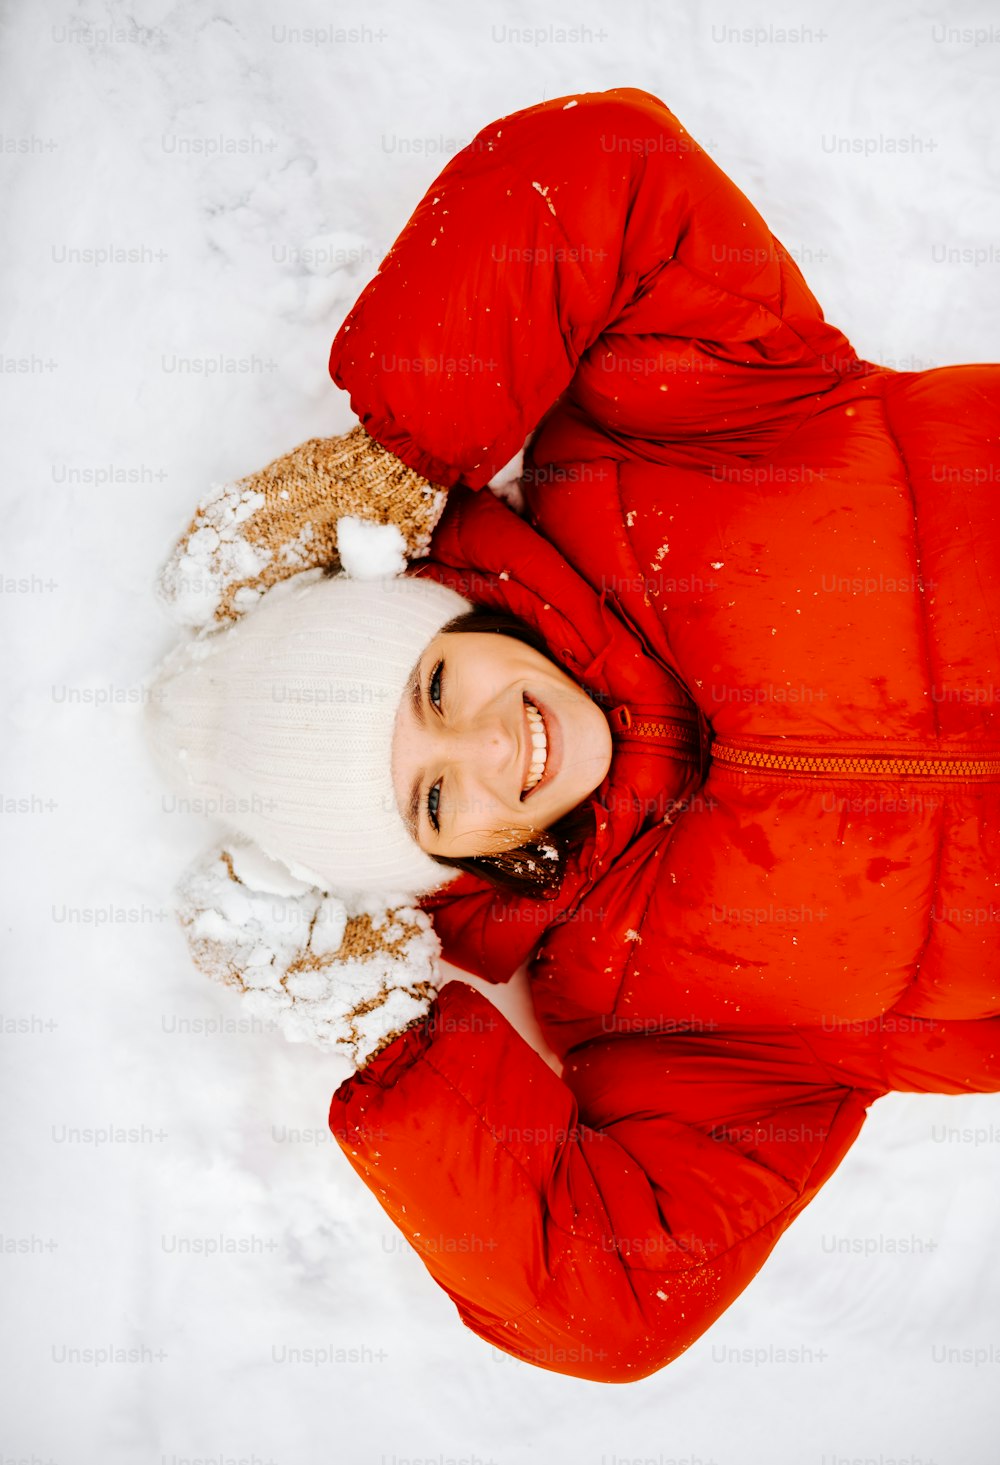 Una mujer con una chaqueta roja tendida en la nieve